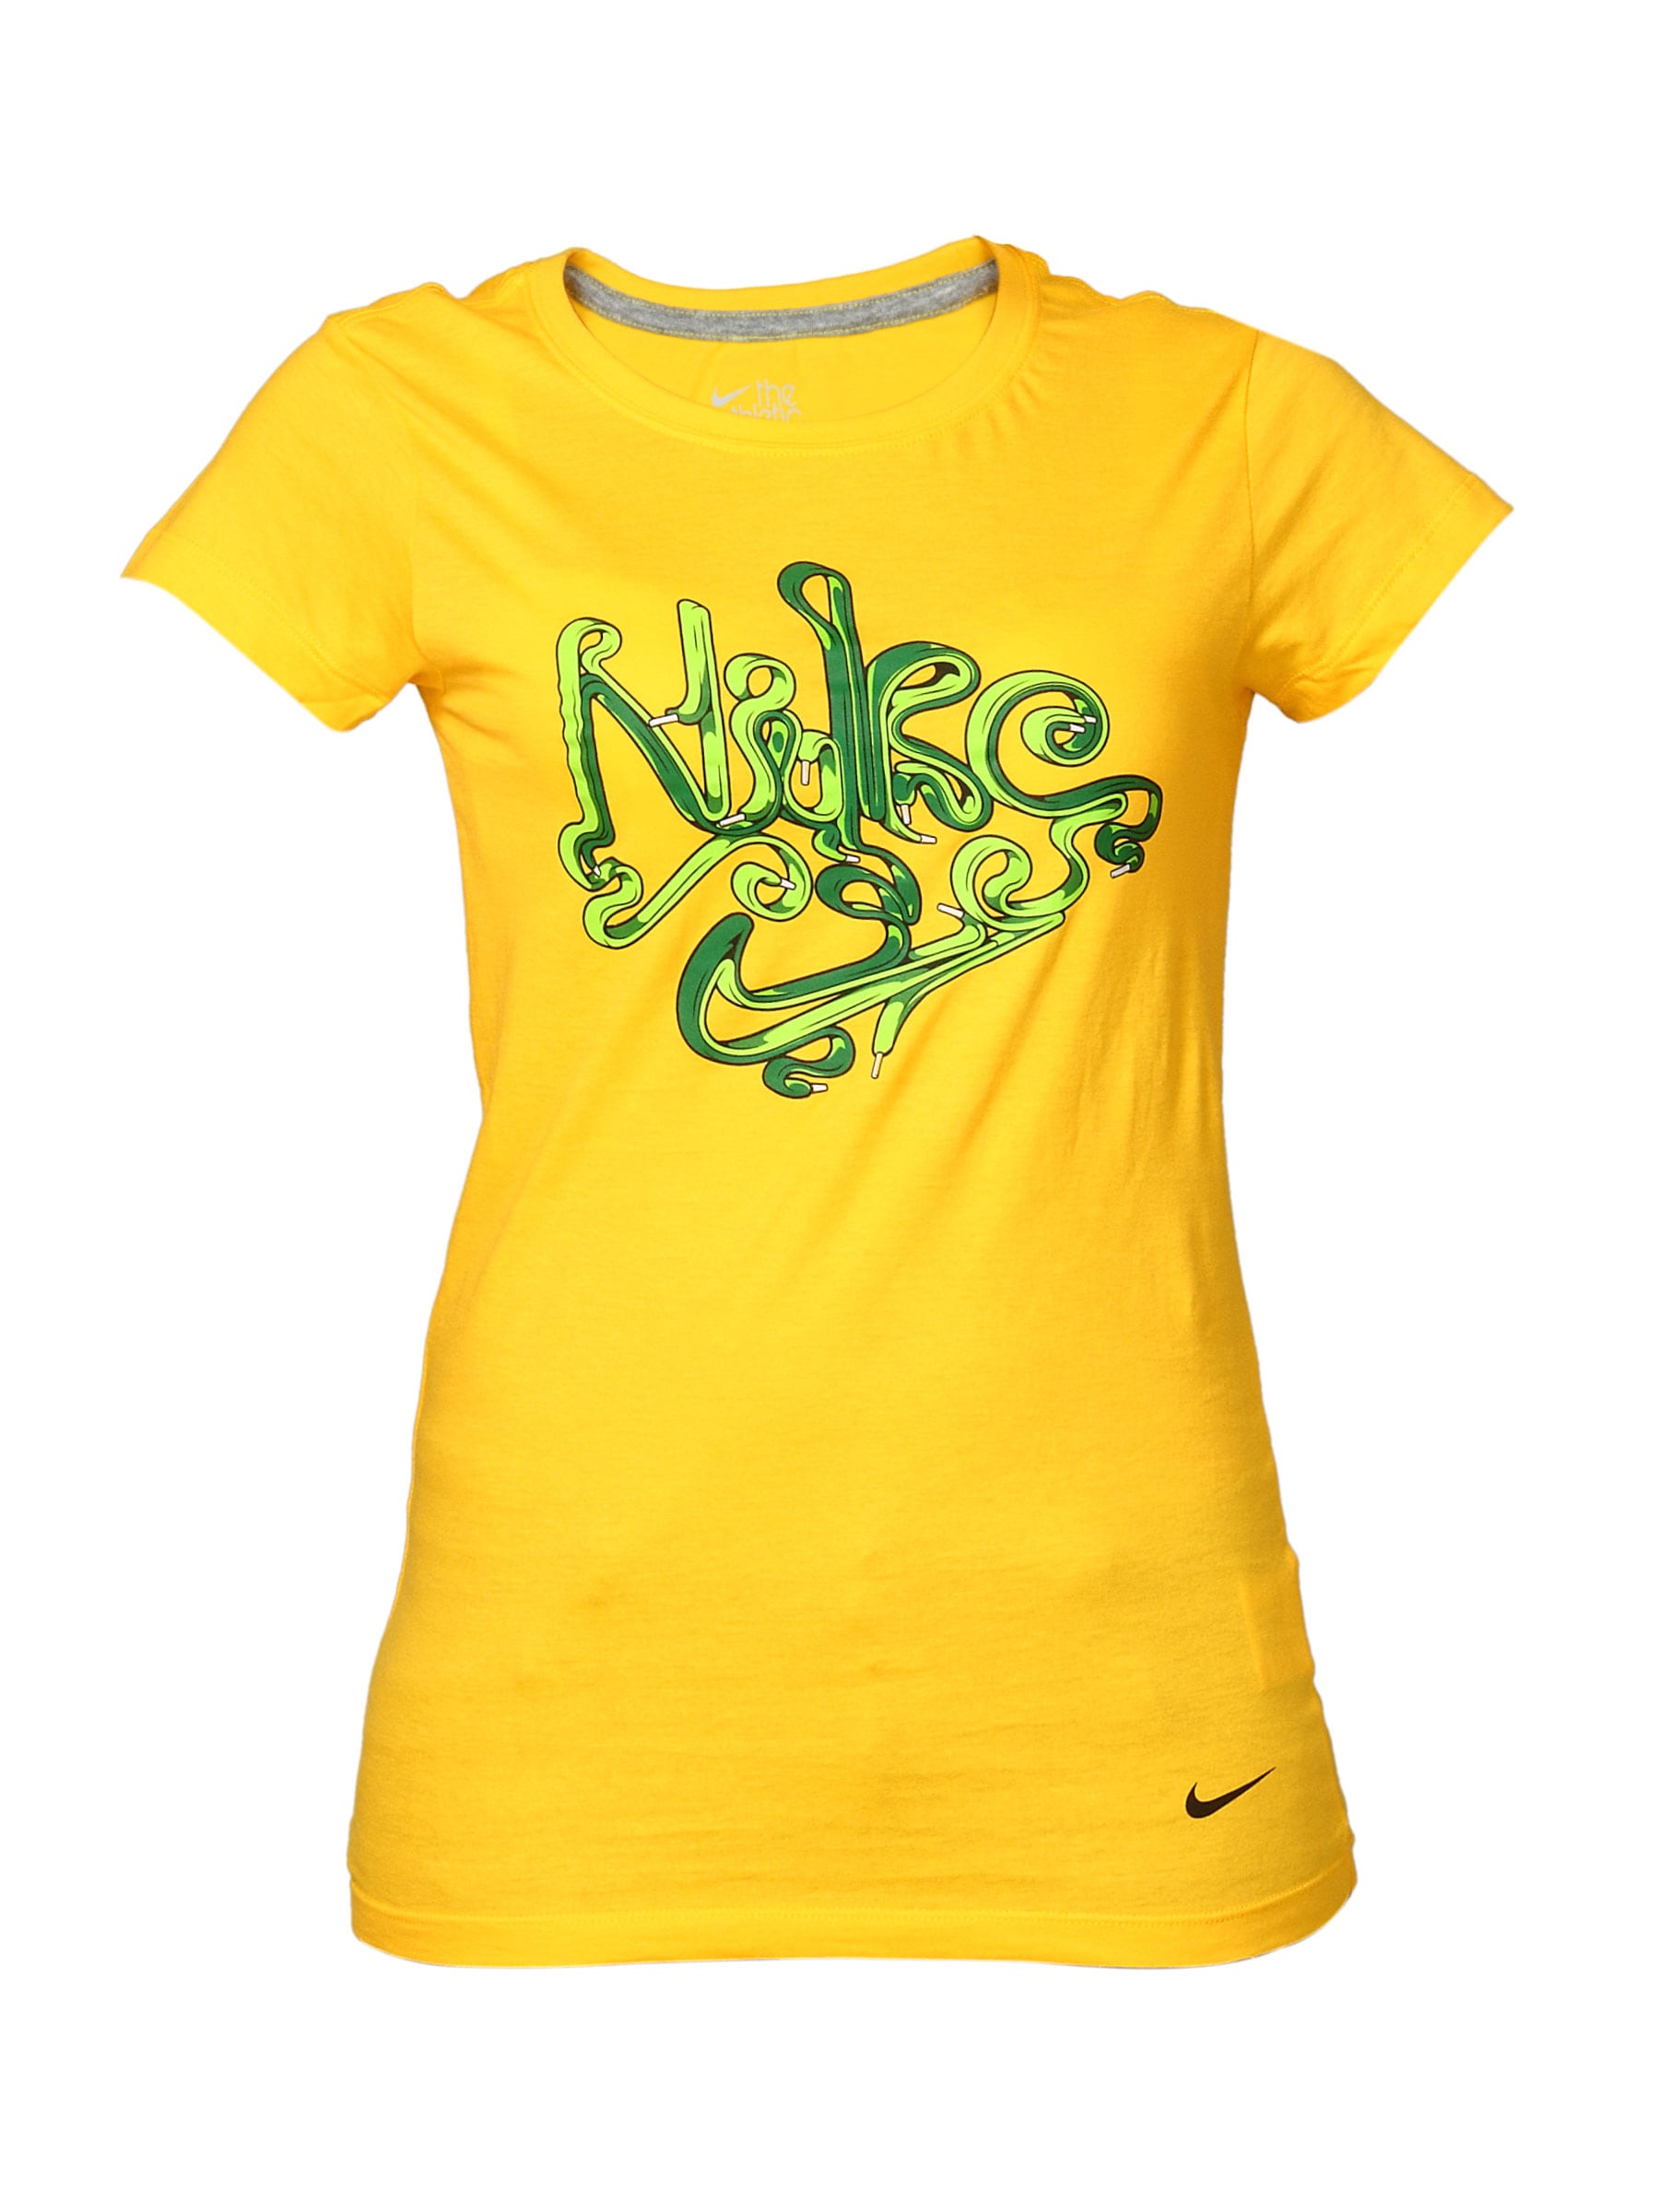 Nike Women's Yellow Casual T-shirt